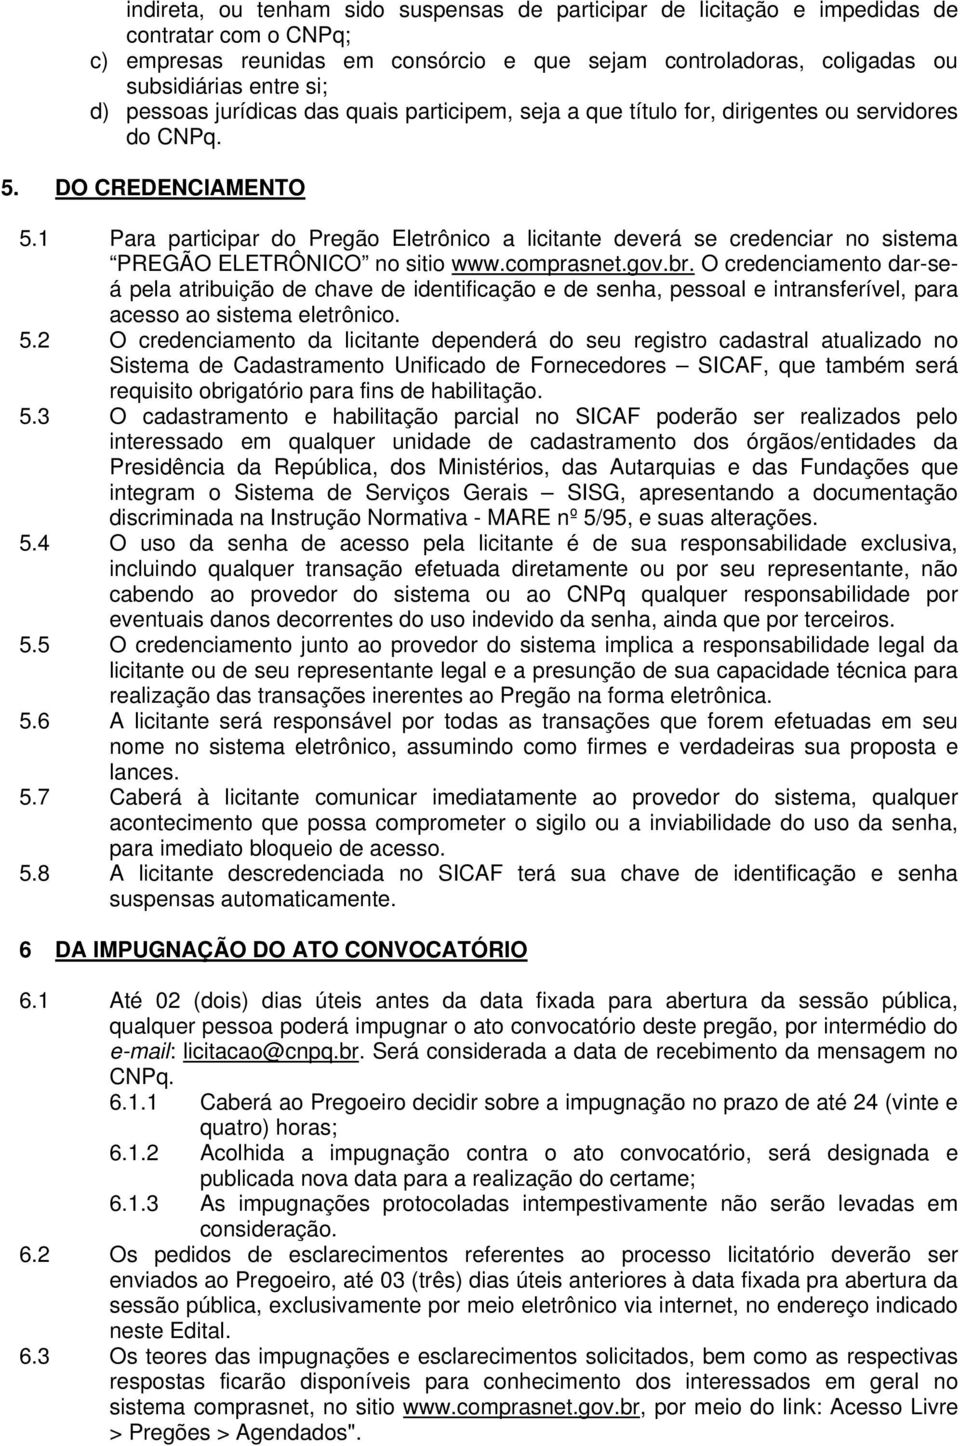 1 Para participar do Pregão Eletrônico a licitante deverá se credenciar no sistema PREGÃO ELETRÔNICO no sitio www.comprasnet.gov.br.